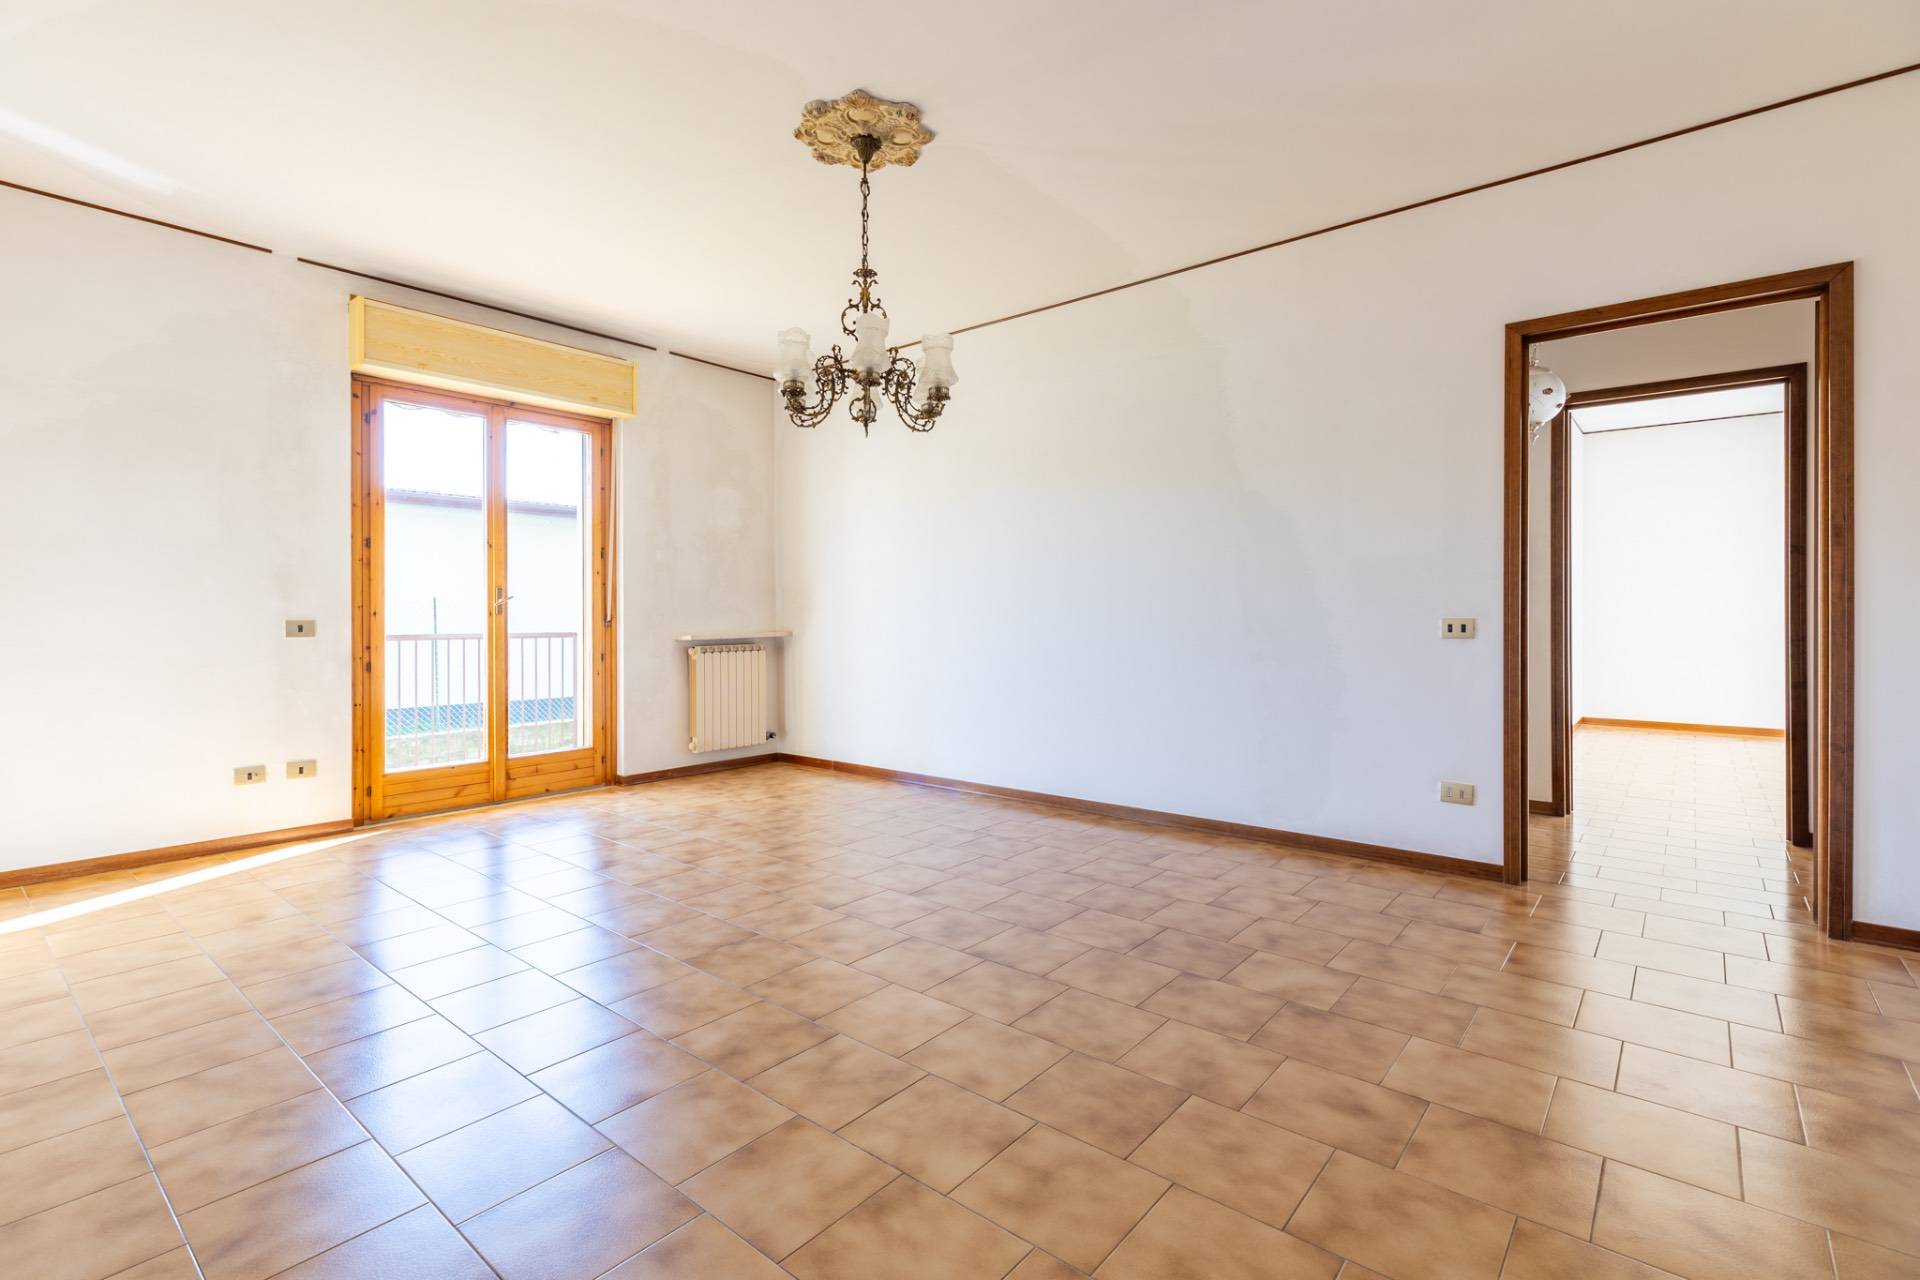 Appartamento in vendita a Bovolone, 4 locali, prezzo € 89.000 | PortaleAgenzieImmobiliari.it